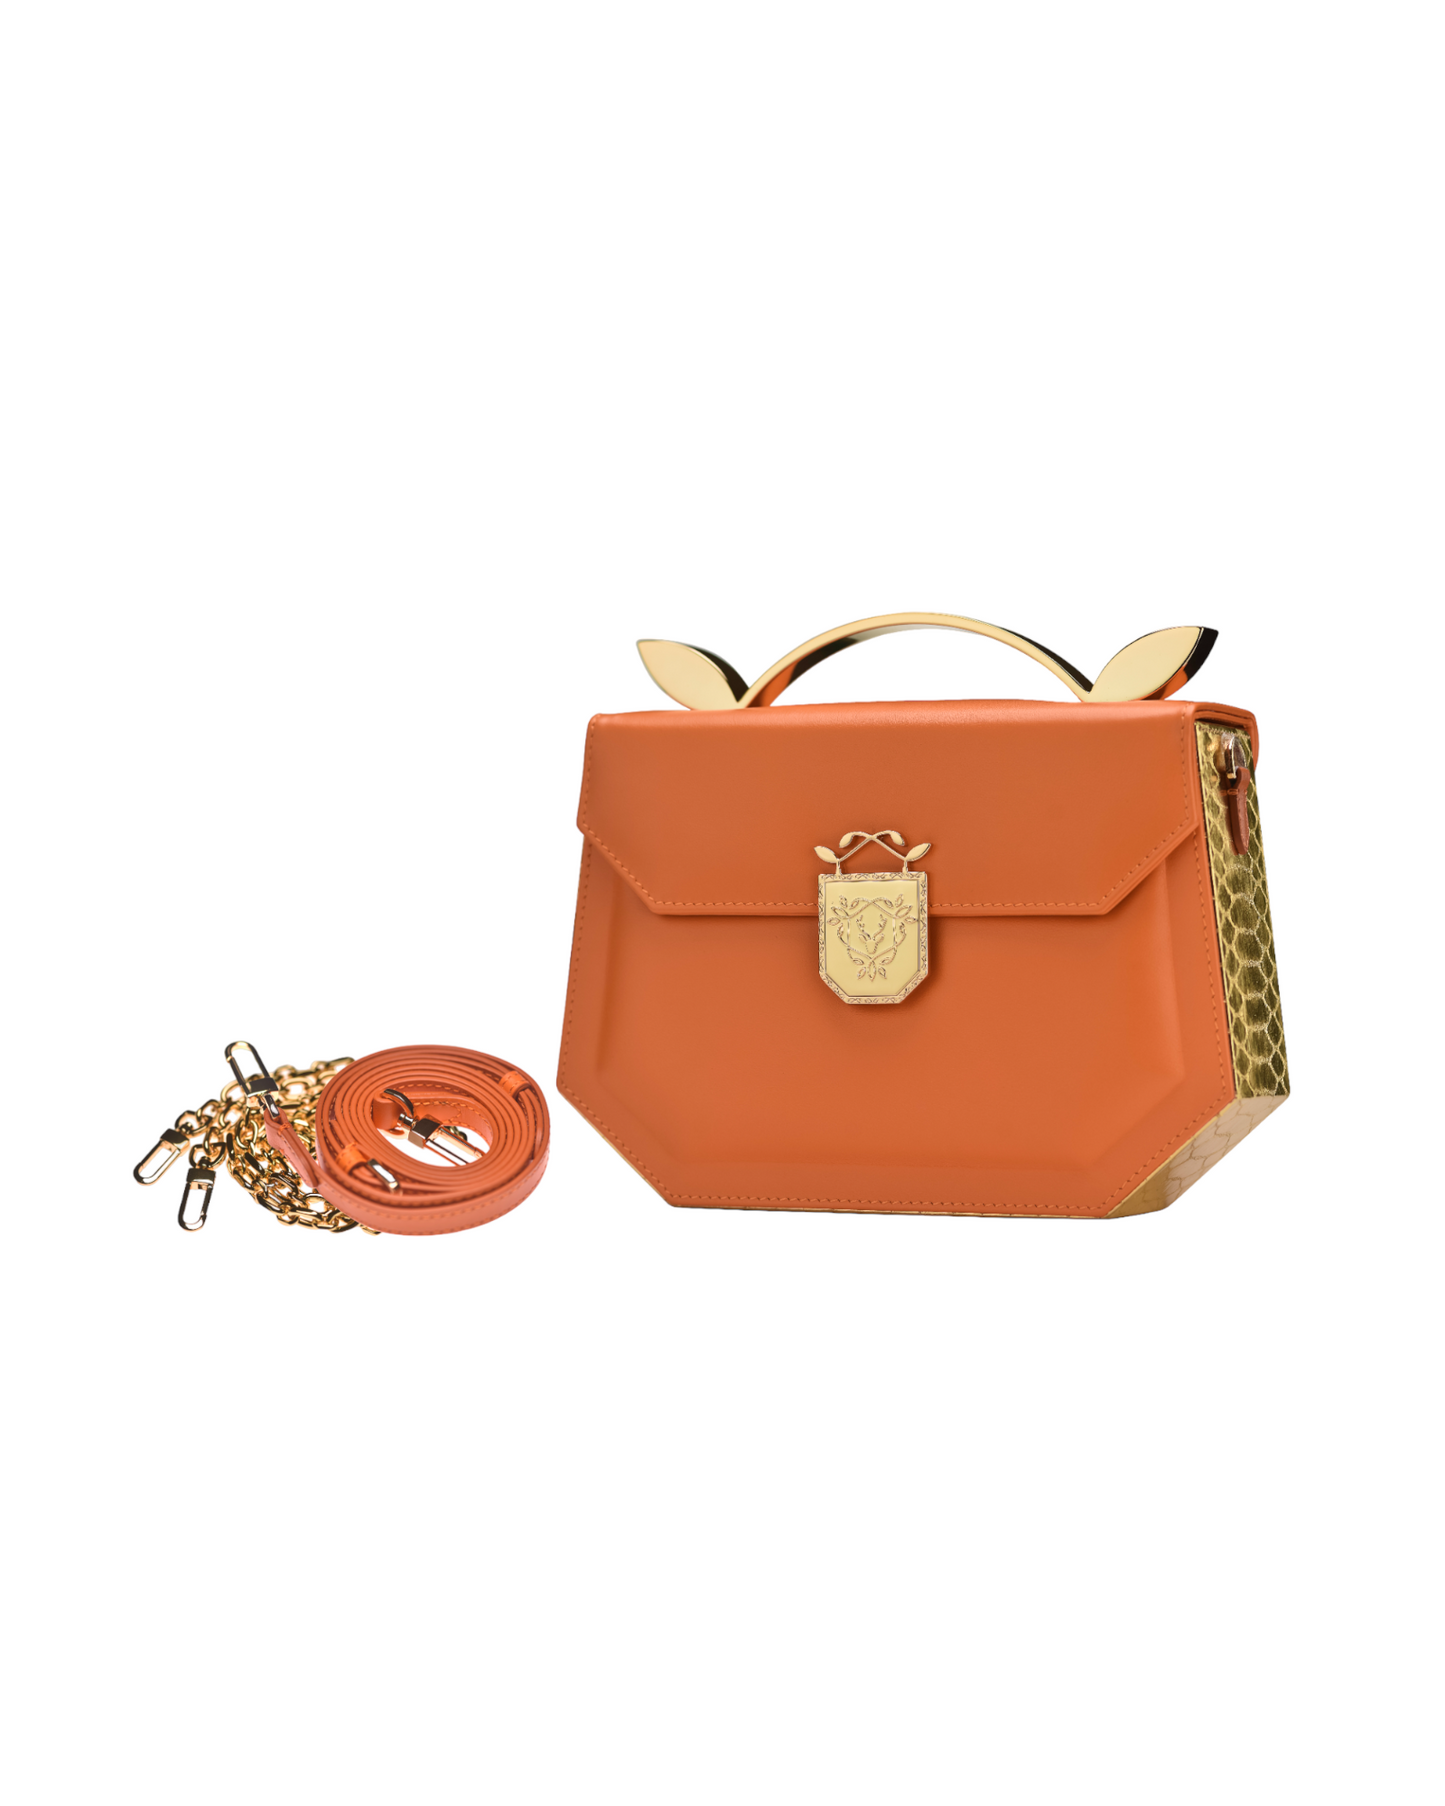 Rania Manasra Shoulder Leather Orange Bag